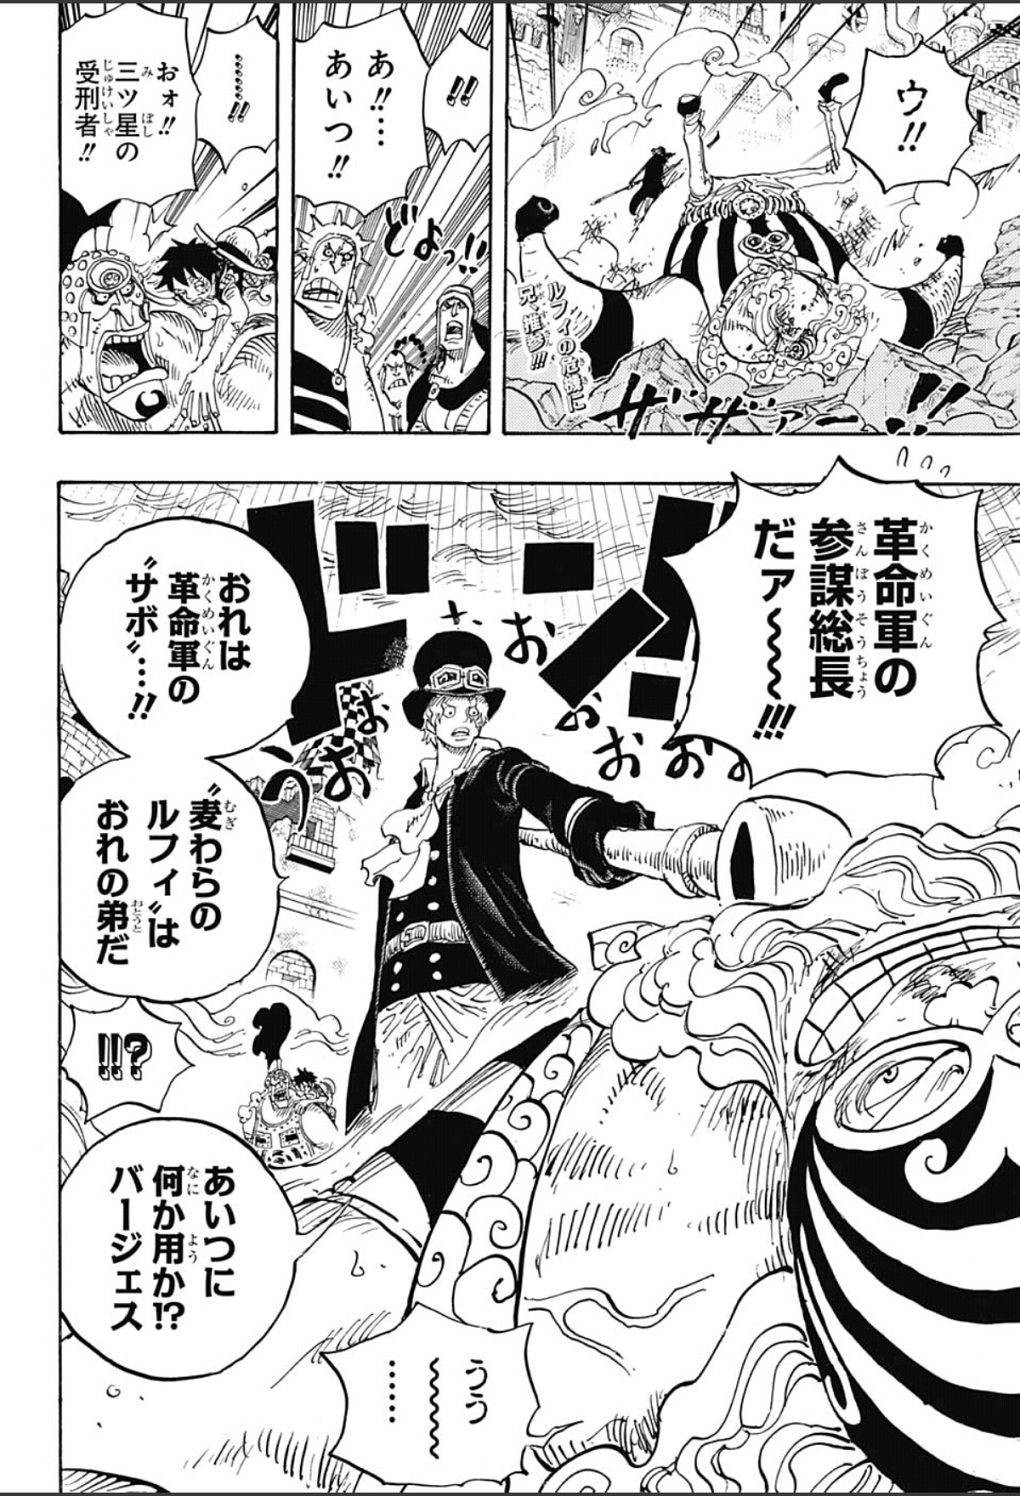 One Piece Chapter 787 Page 2 Raw Sen Manga